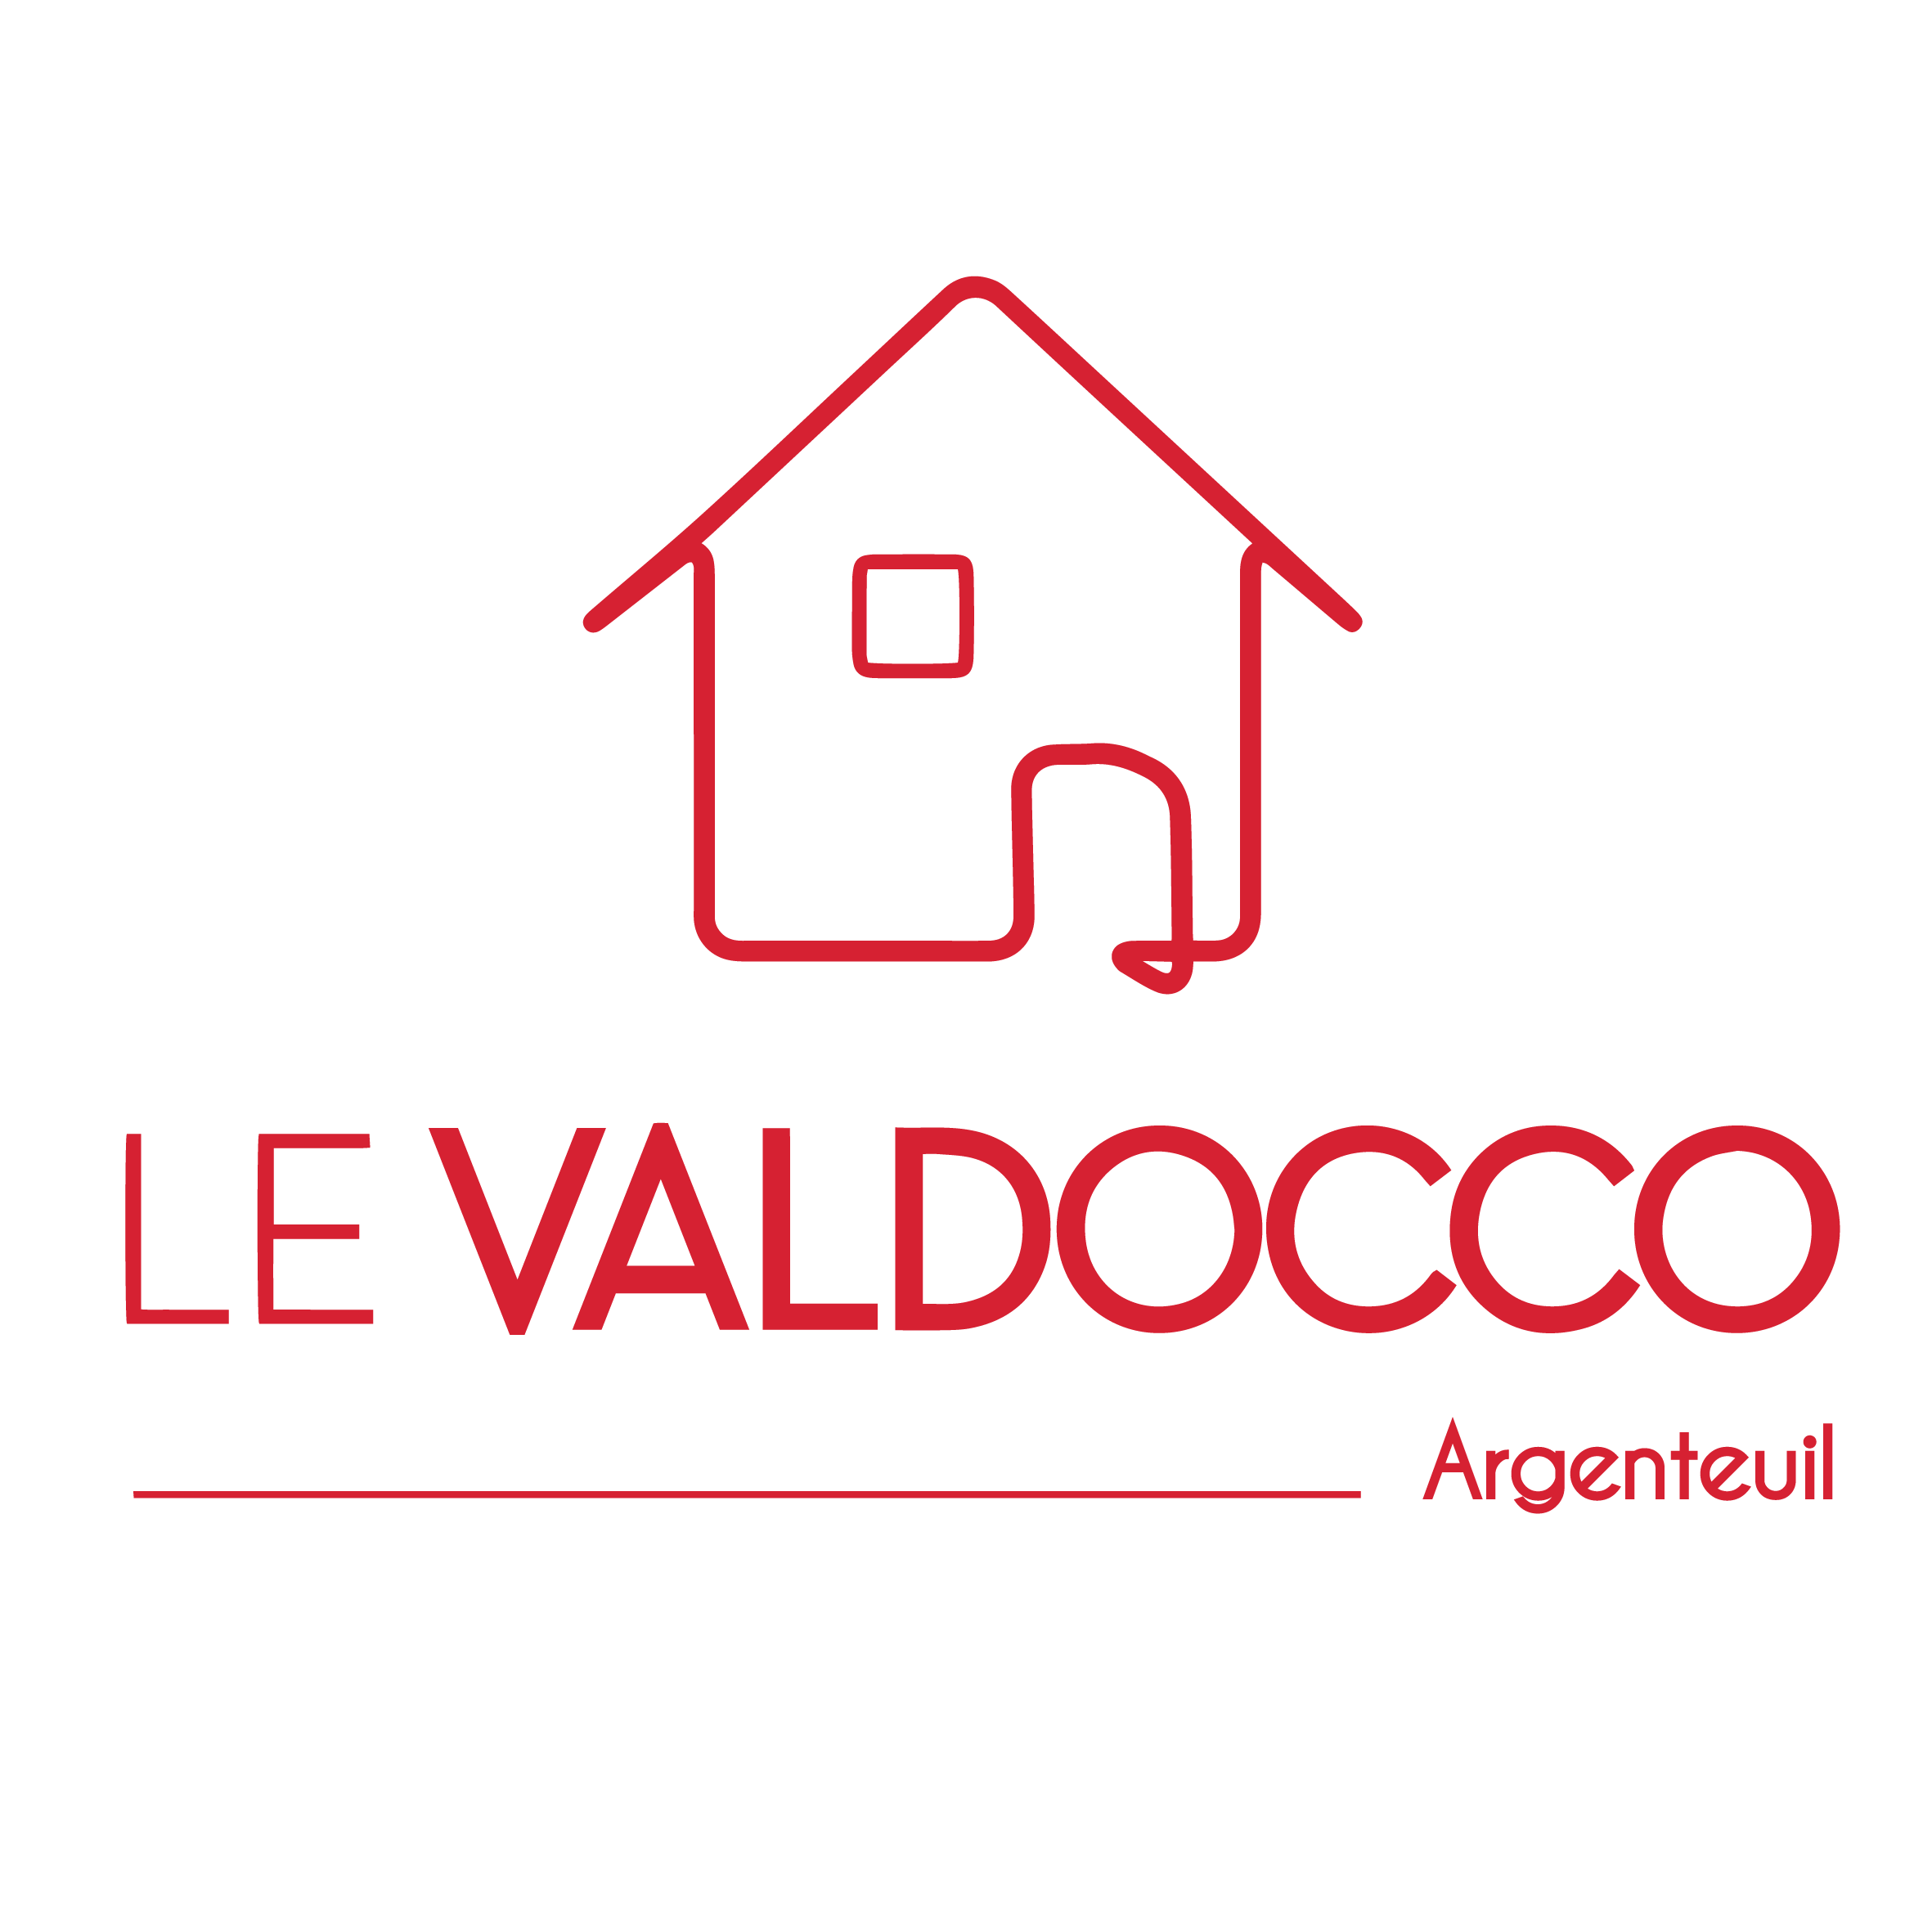 Le Valdocco_Logo Argenteuil